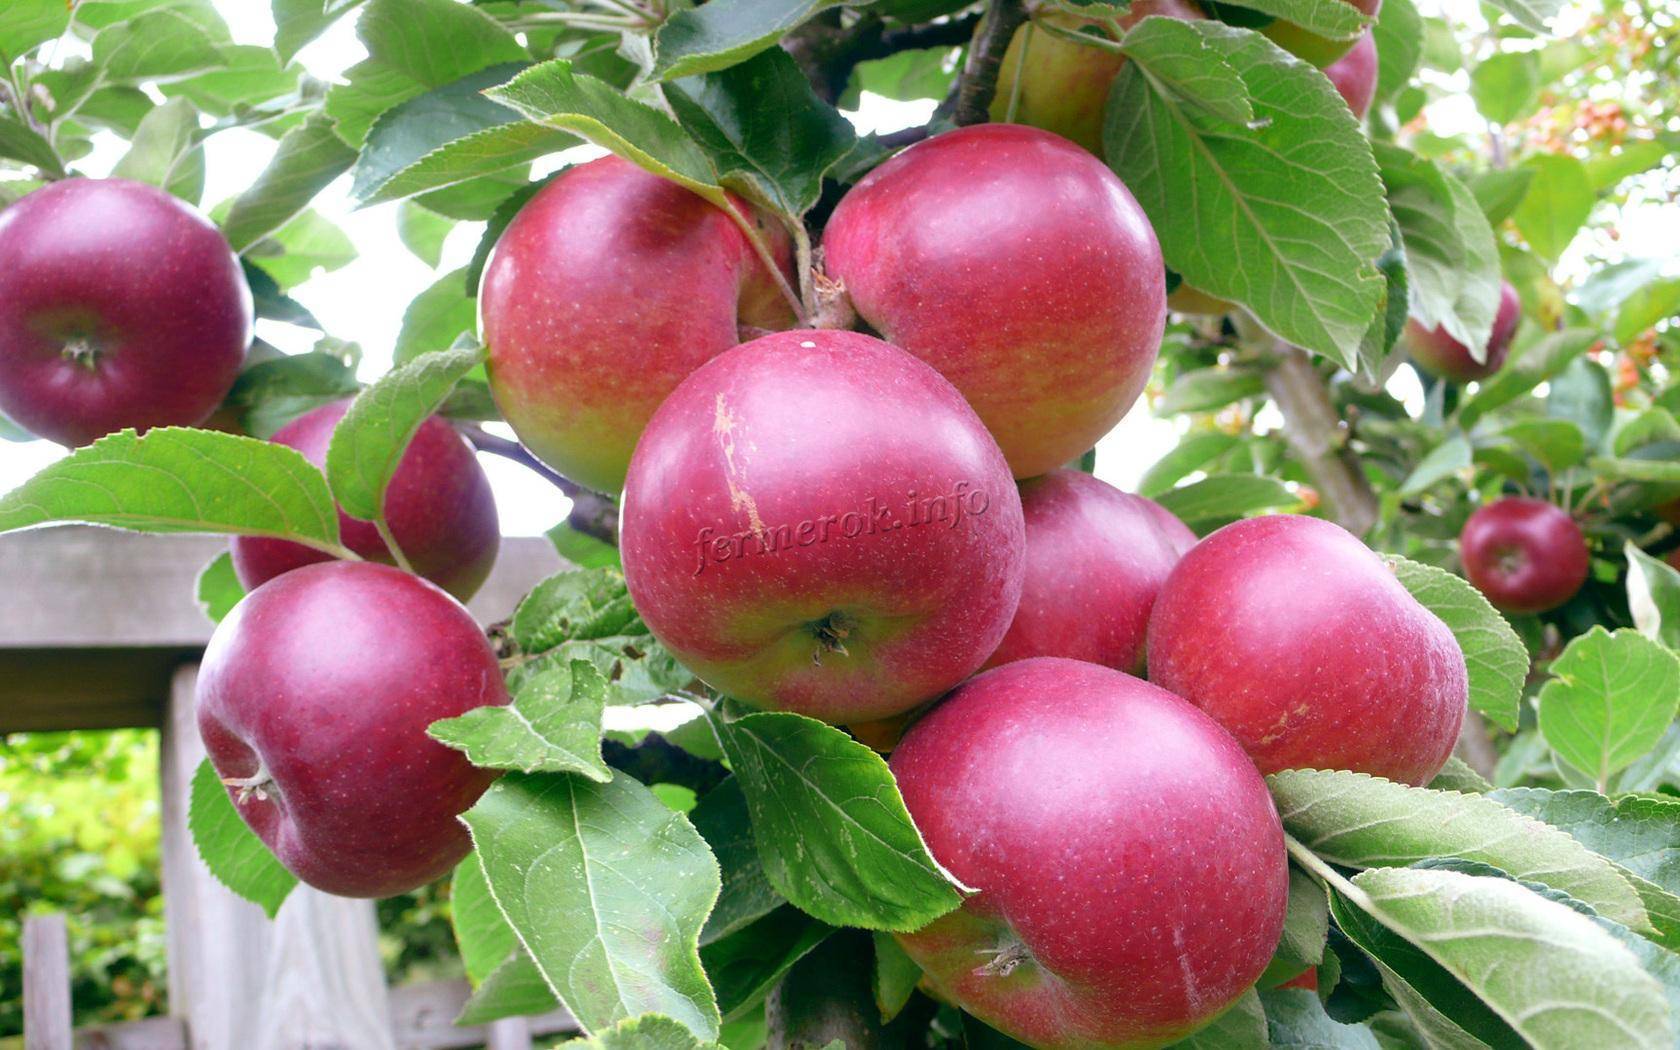 О подкормке для яблонь и груш весной: советы и рекомендации бывалых садоводов